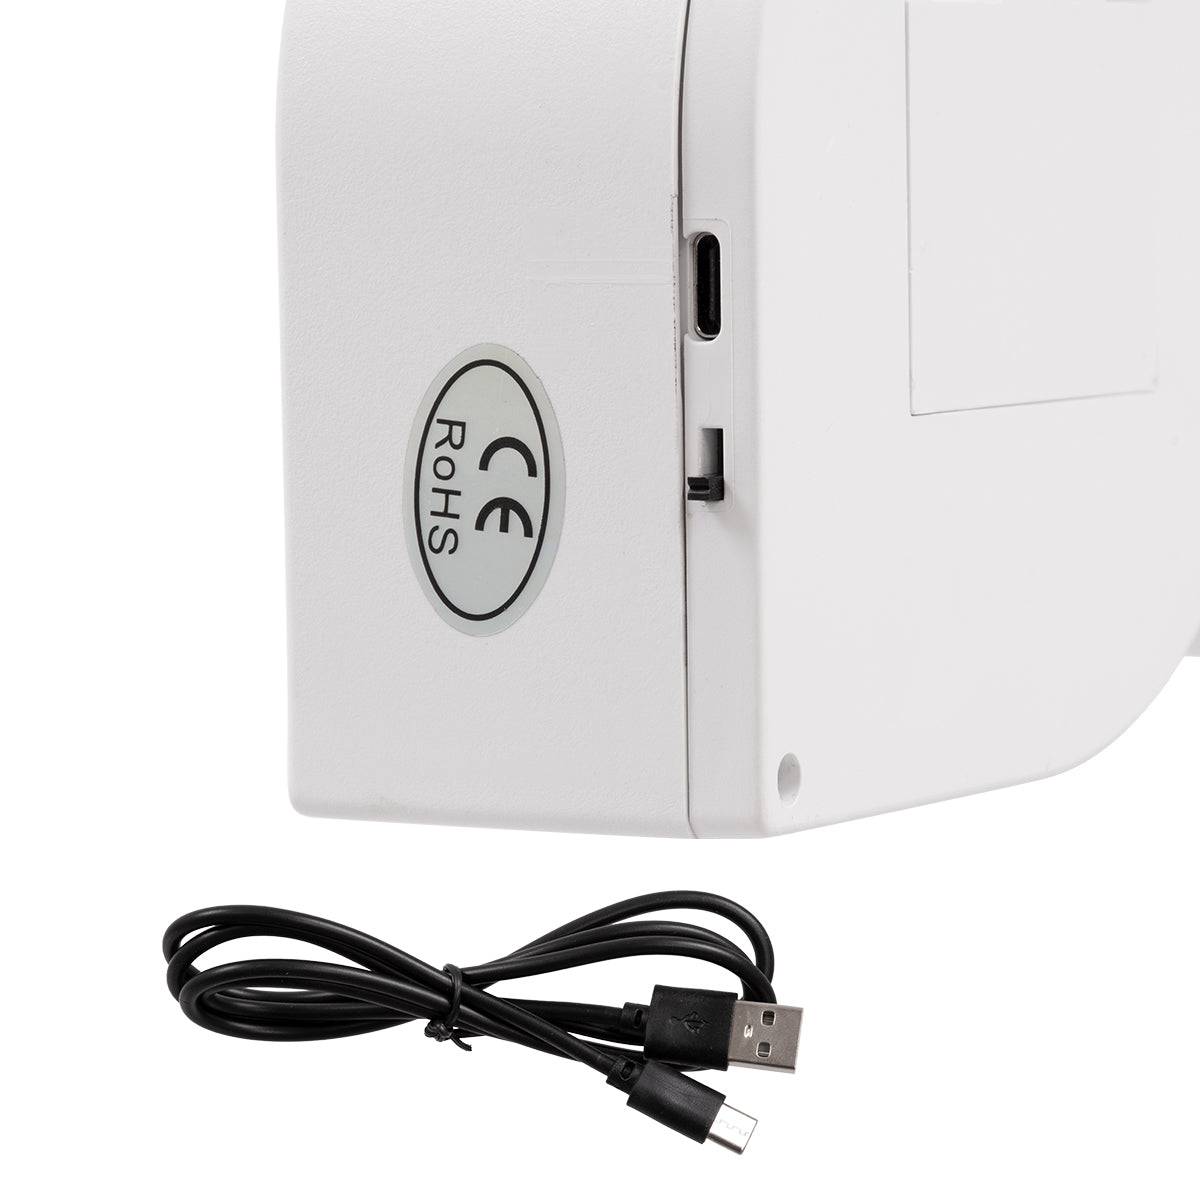 GloboStar® 76553 Μοντέρνο Επιτραπέζιο Διακοσμητικό Φωτιστικό LED Σήμανσης MULTICOLOR LOVE 2W με Διακόπτη On/Off & Καλώδιο Τροφοδοσίας USB - Μπαταρίας 3xAAA (Δεν Περιλαμβάνονται) Ψυχρό Λευκό 6000K - ledmania.gr